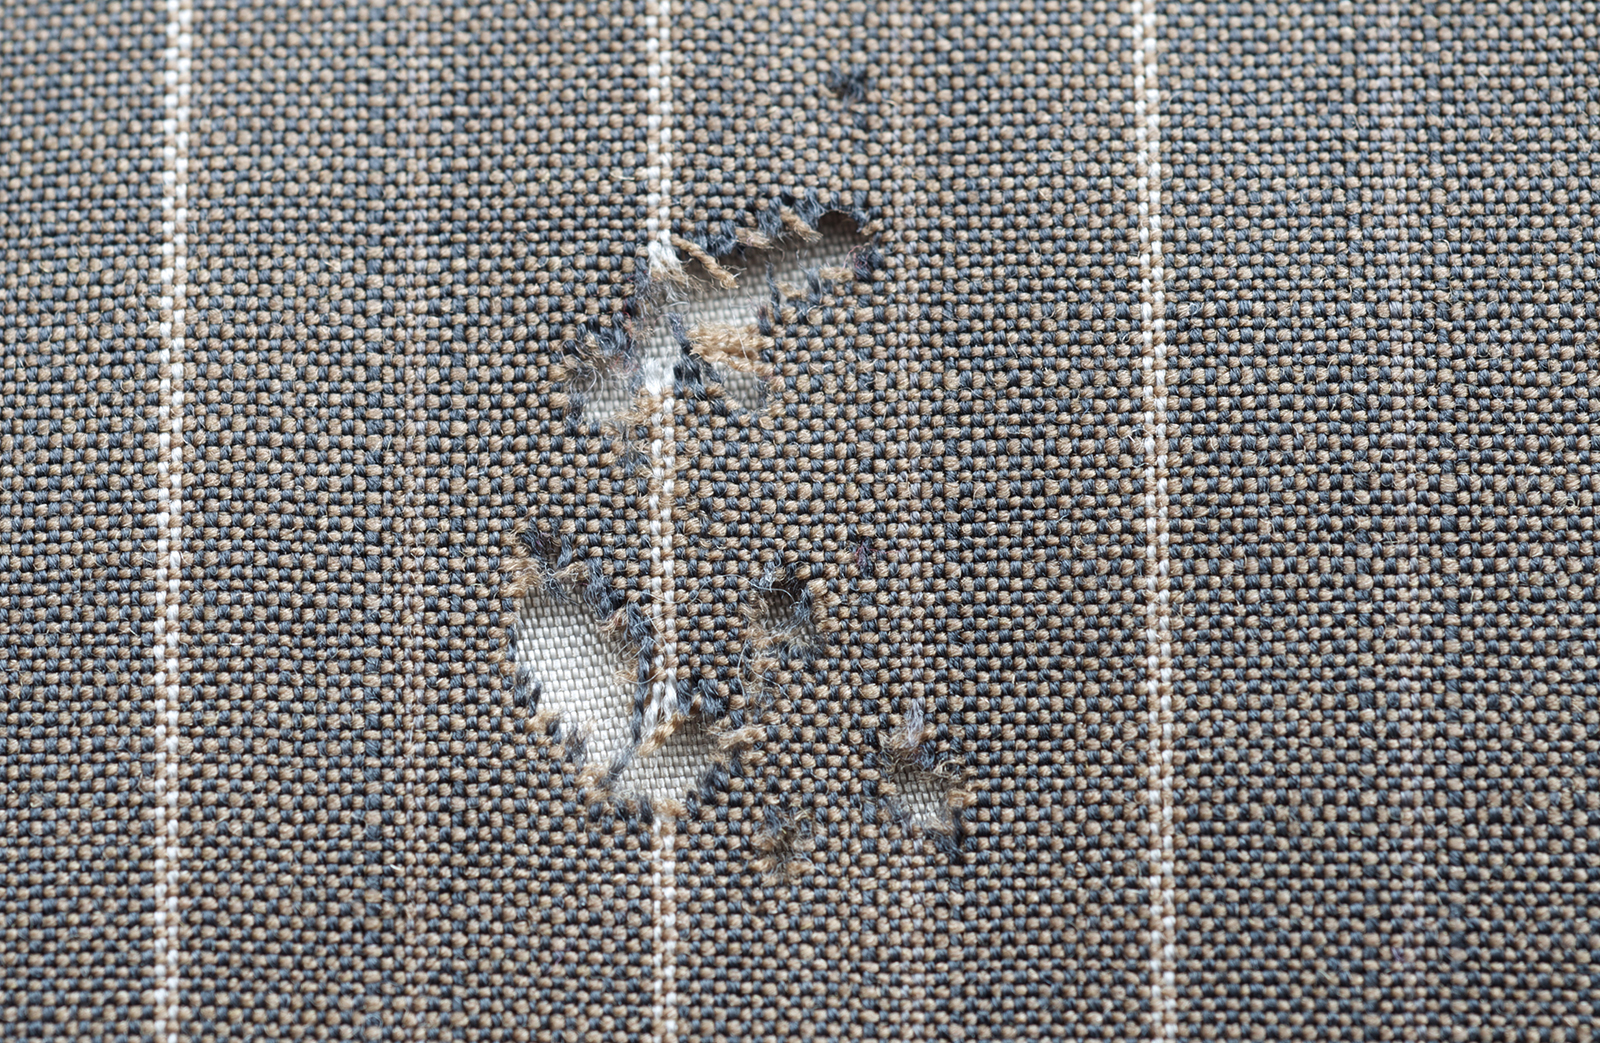 2 Bags Moth Balls Kills Clothes Moths Carpet Beetles Fresh Linen